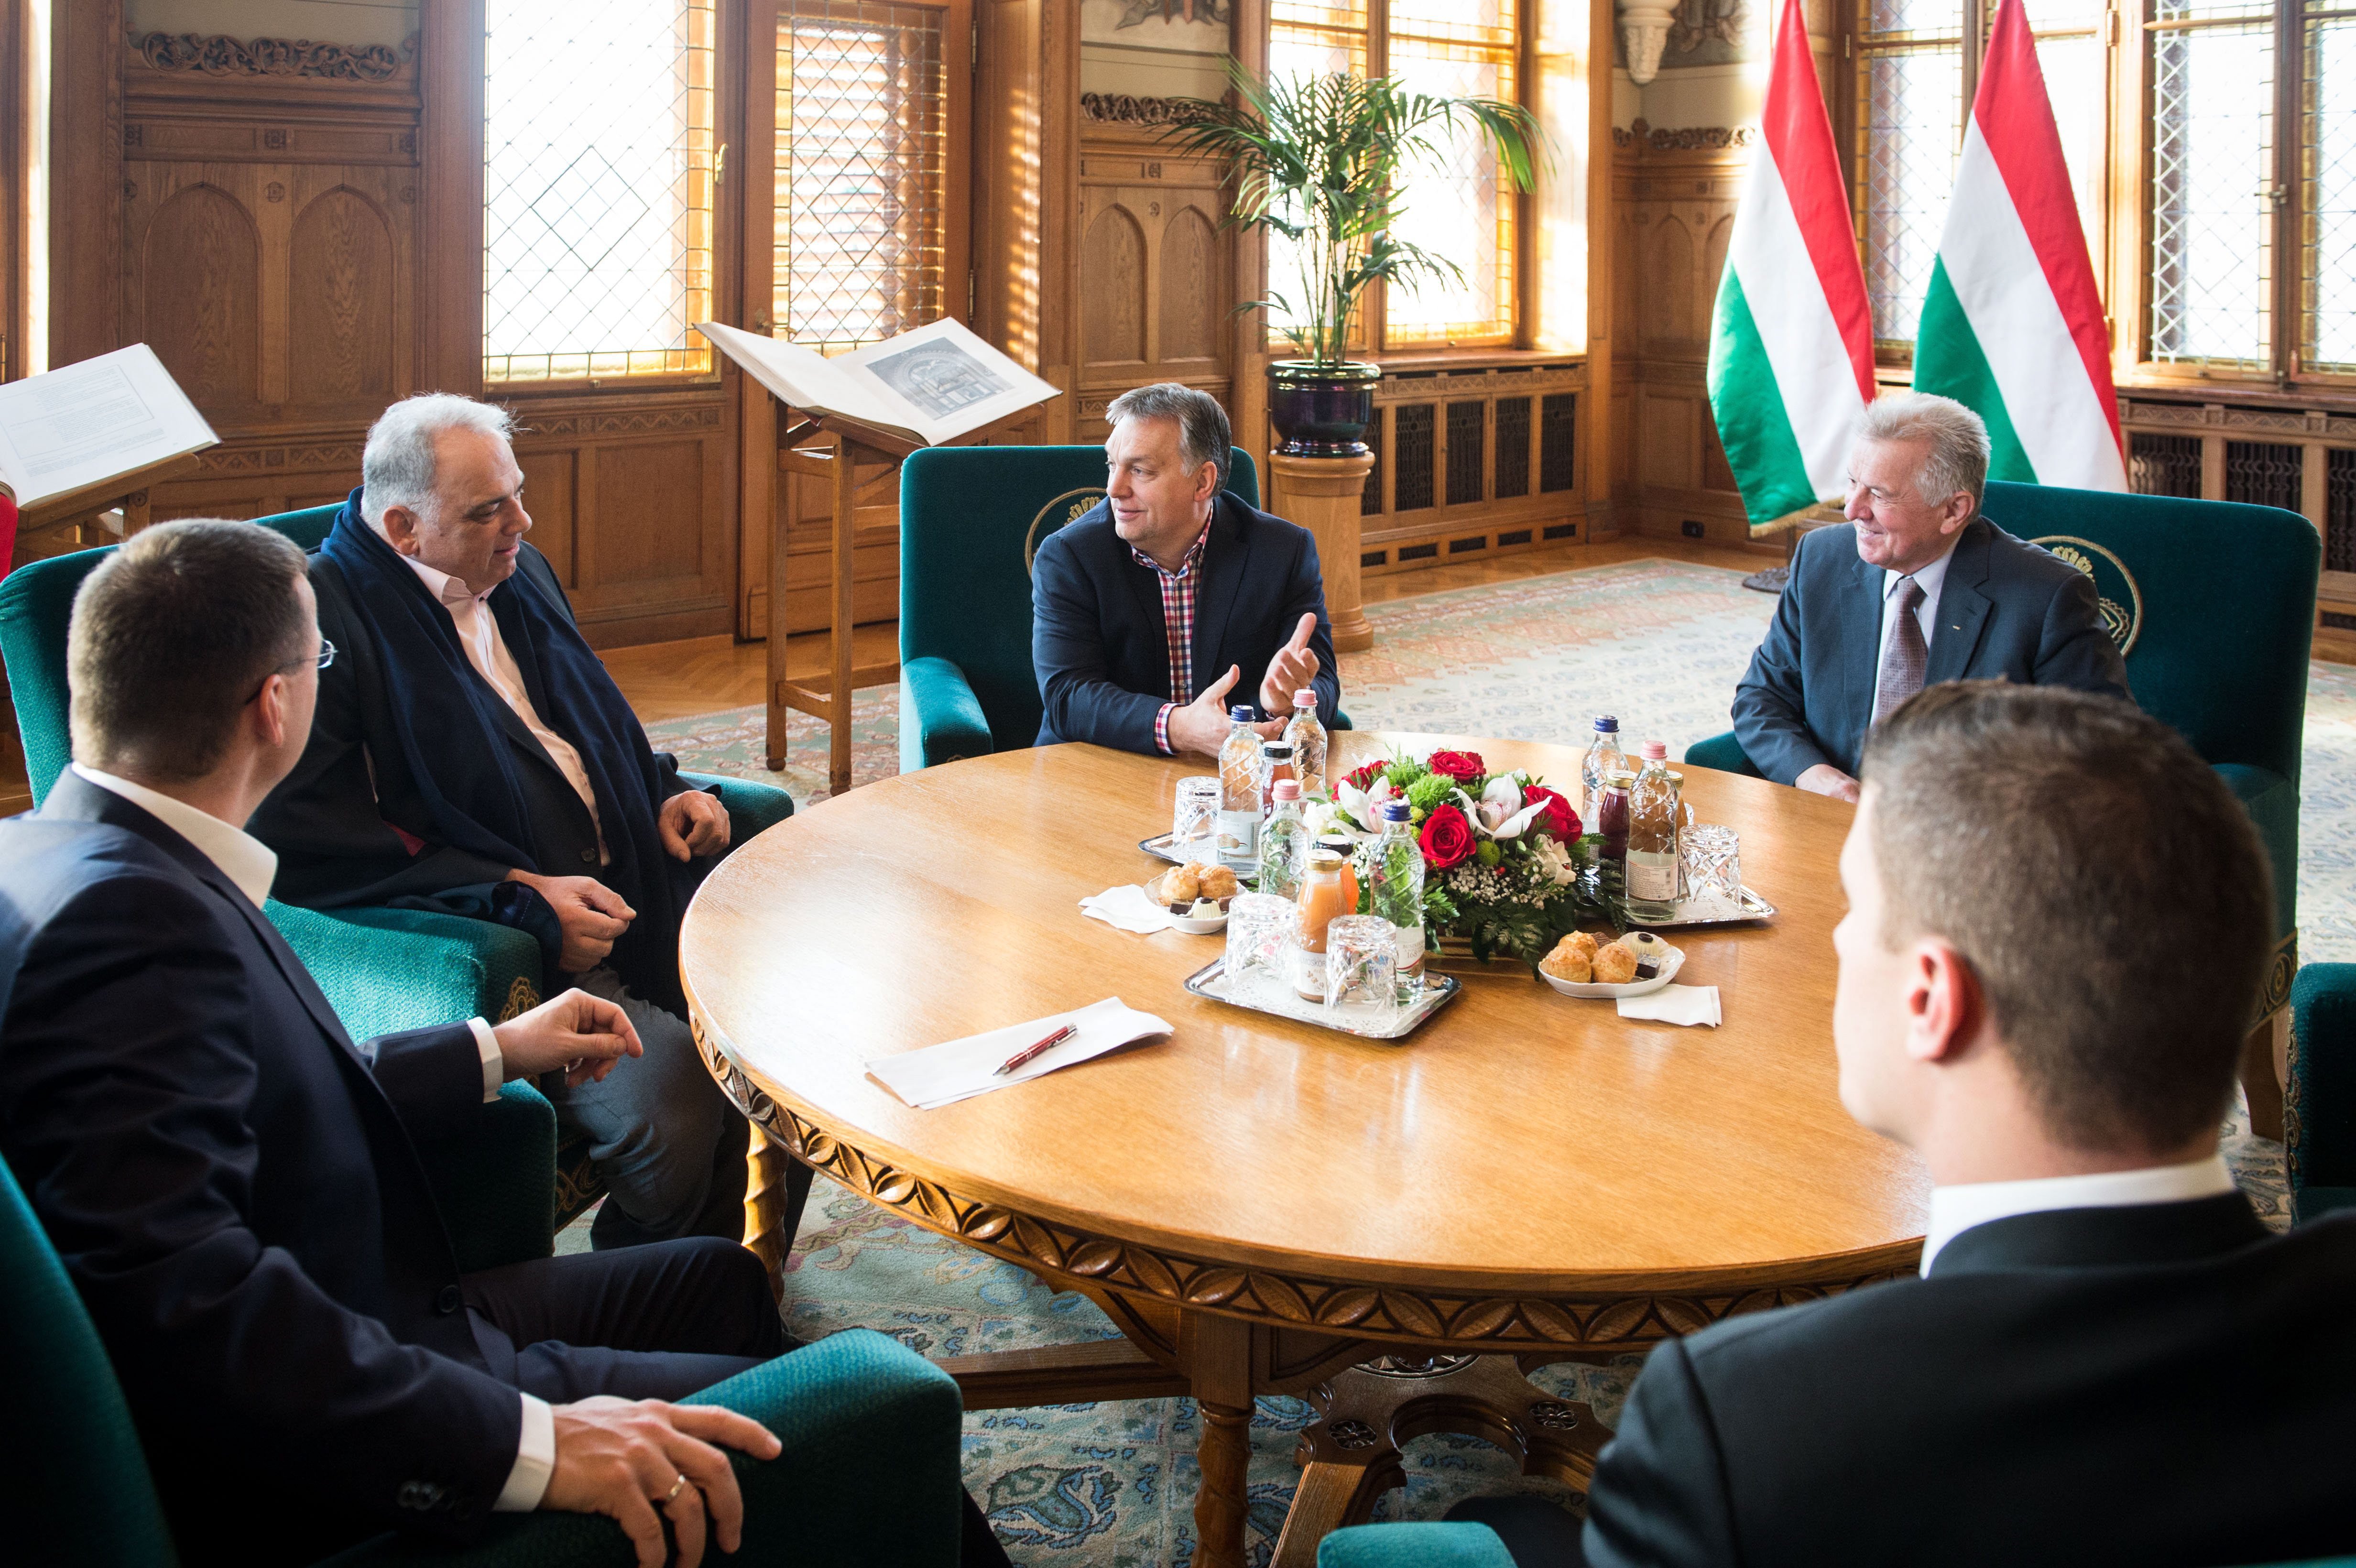 Miközben Orbán Viktornak nincs ideje személyesen felköszönteni a Fidelitast, a birkózók világszövetségének elnökét és Schmitt Pált azért fogadja